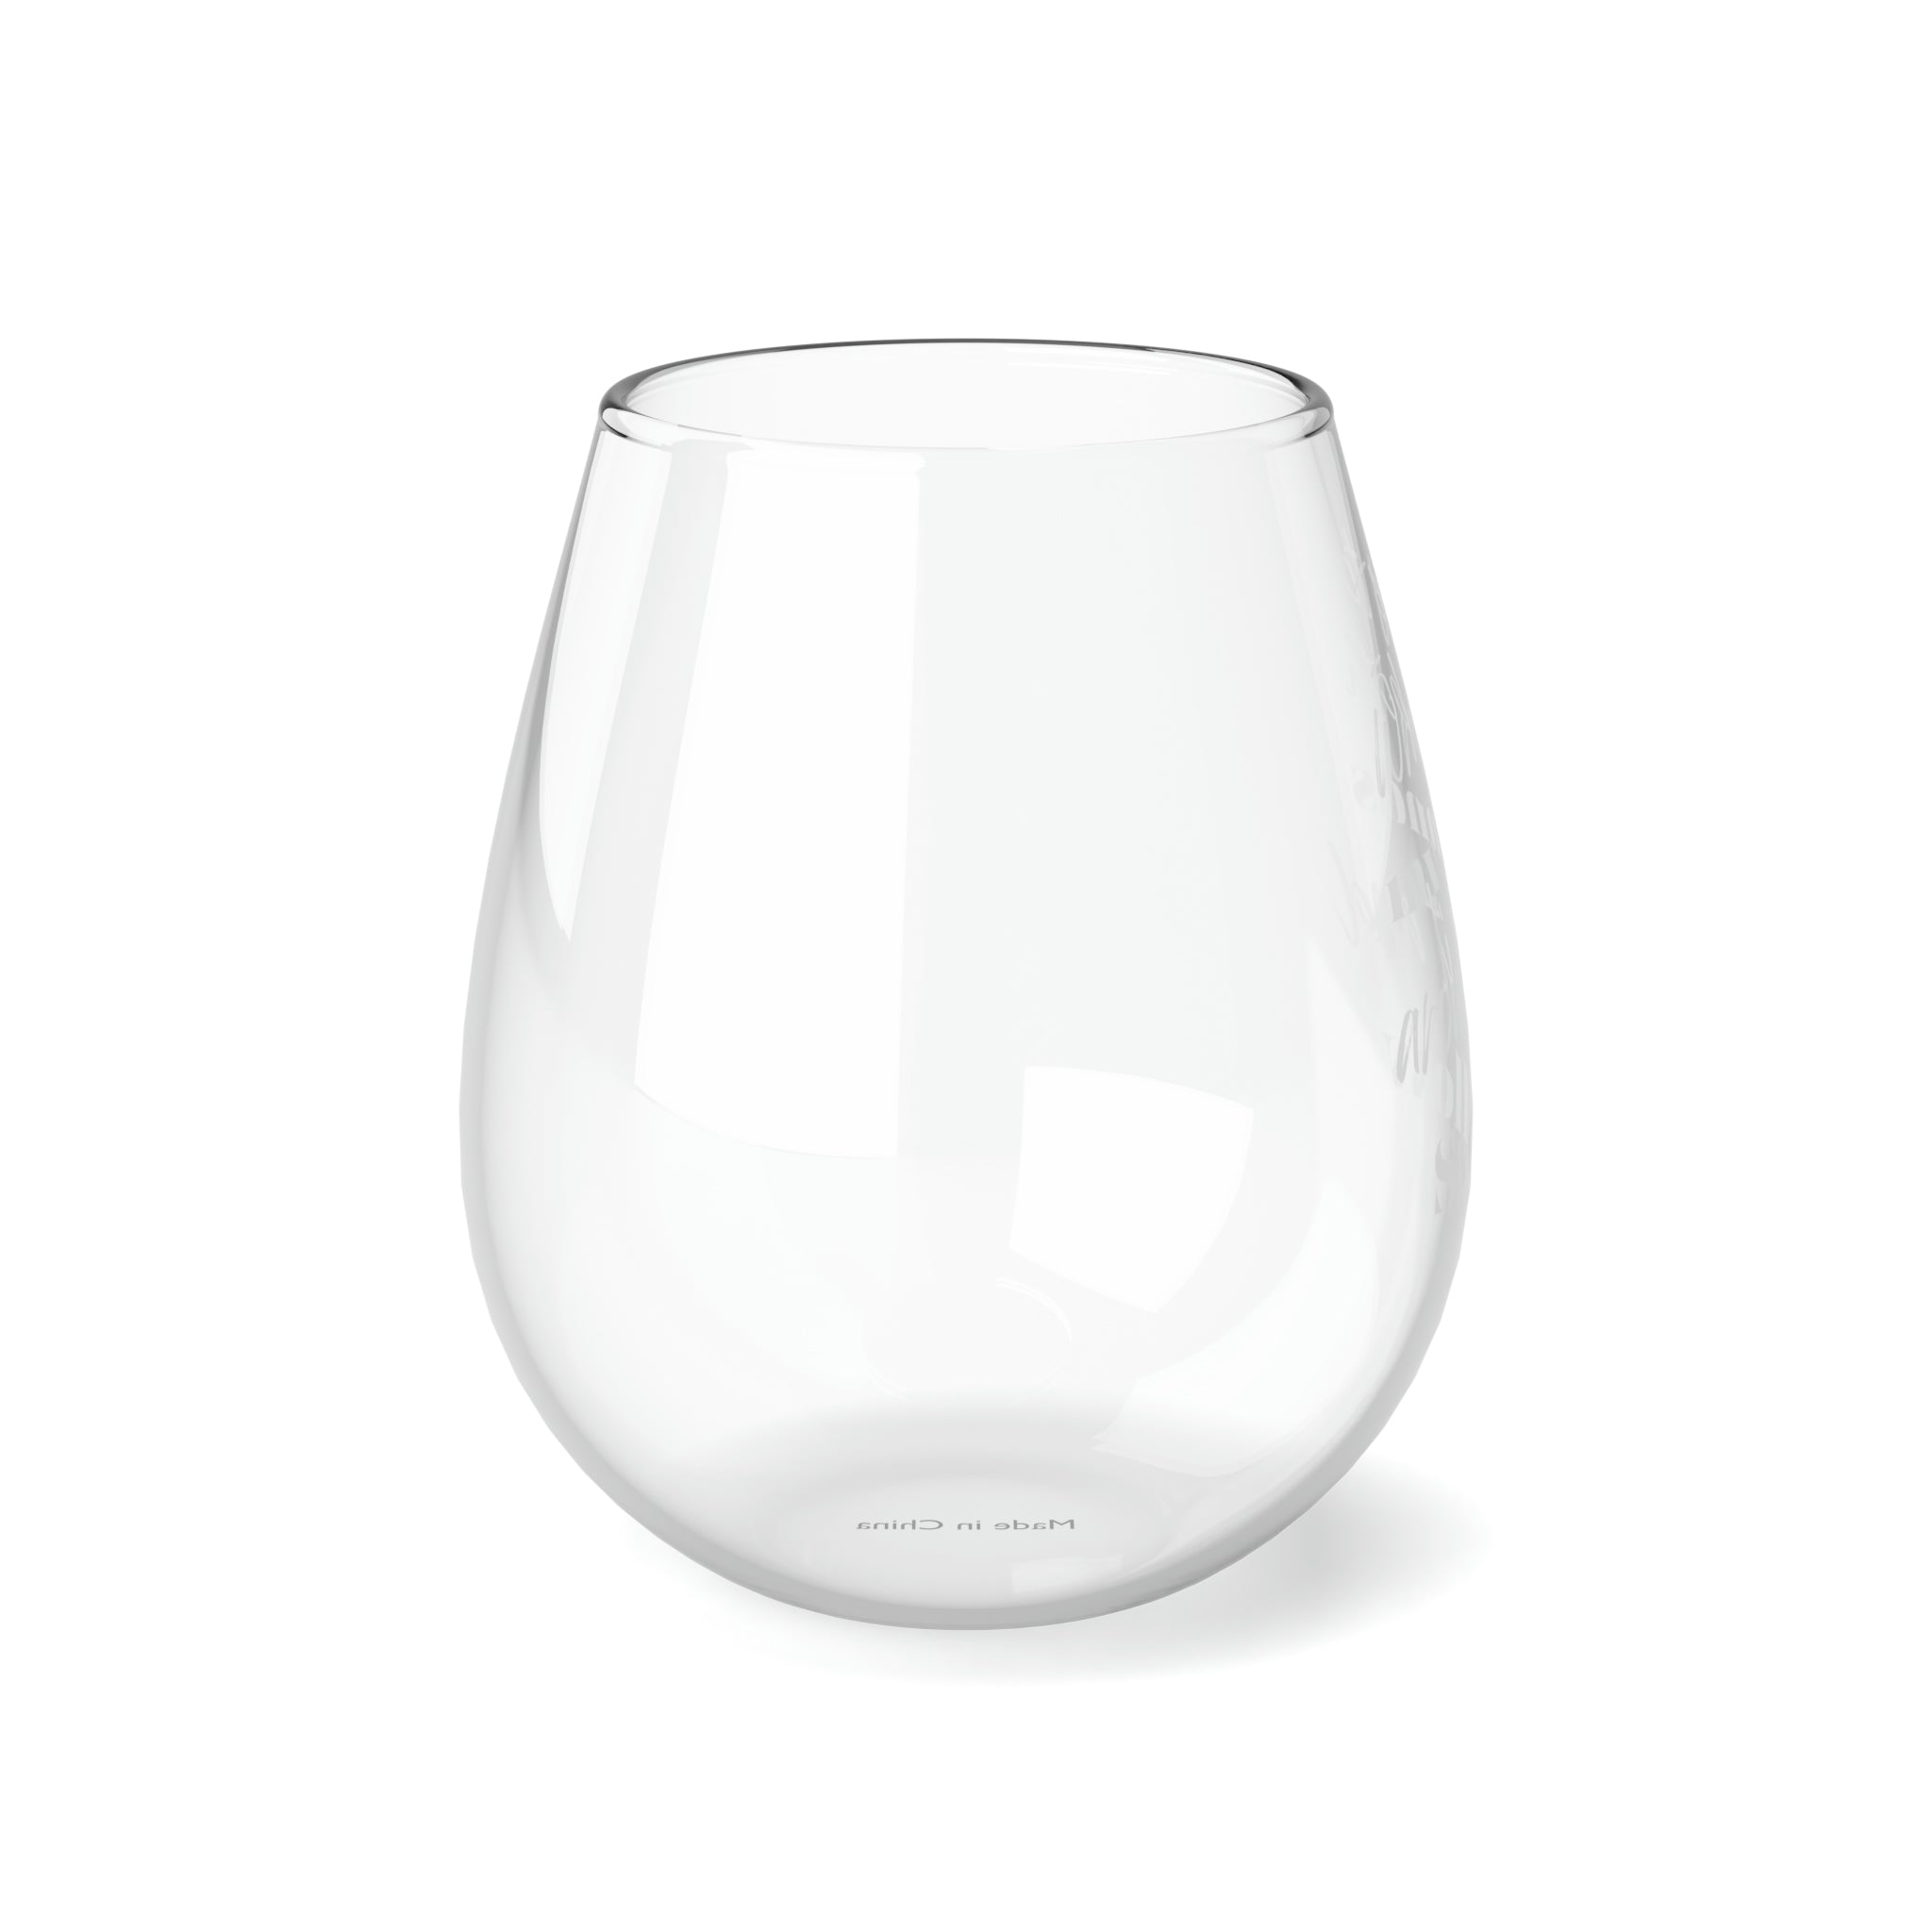 Wrap My Hands Around It - Stemless Wine Glass, 11.75oz